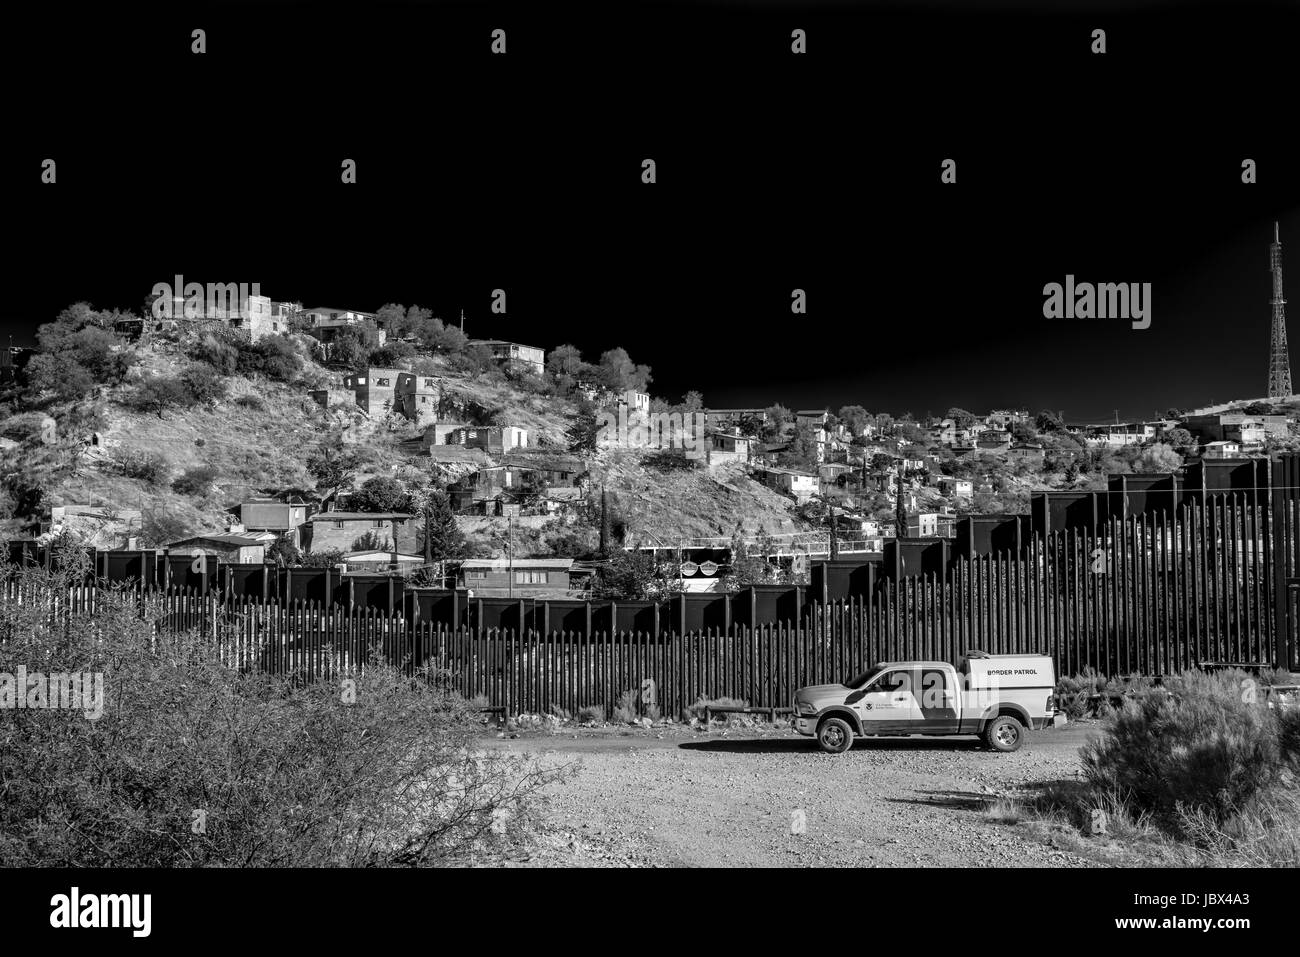 Border Patrol vor der Zaun zwischen den USA und Mexiko in Nogales, Arizona, Vereinigte Staaten; eine Frage der aktuellen Politik und Debatte Stockfoto